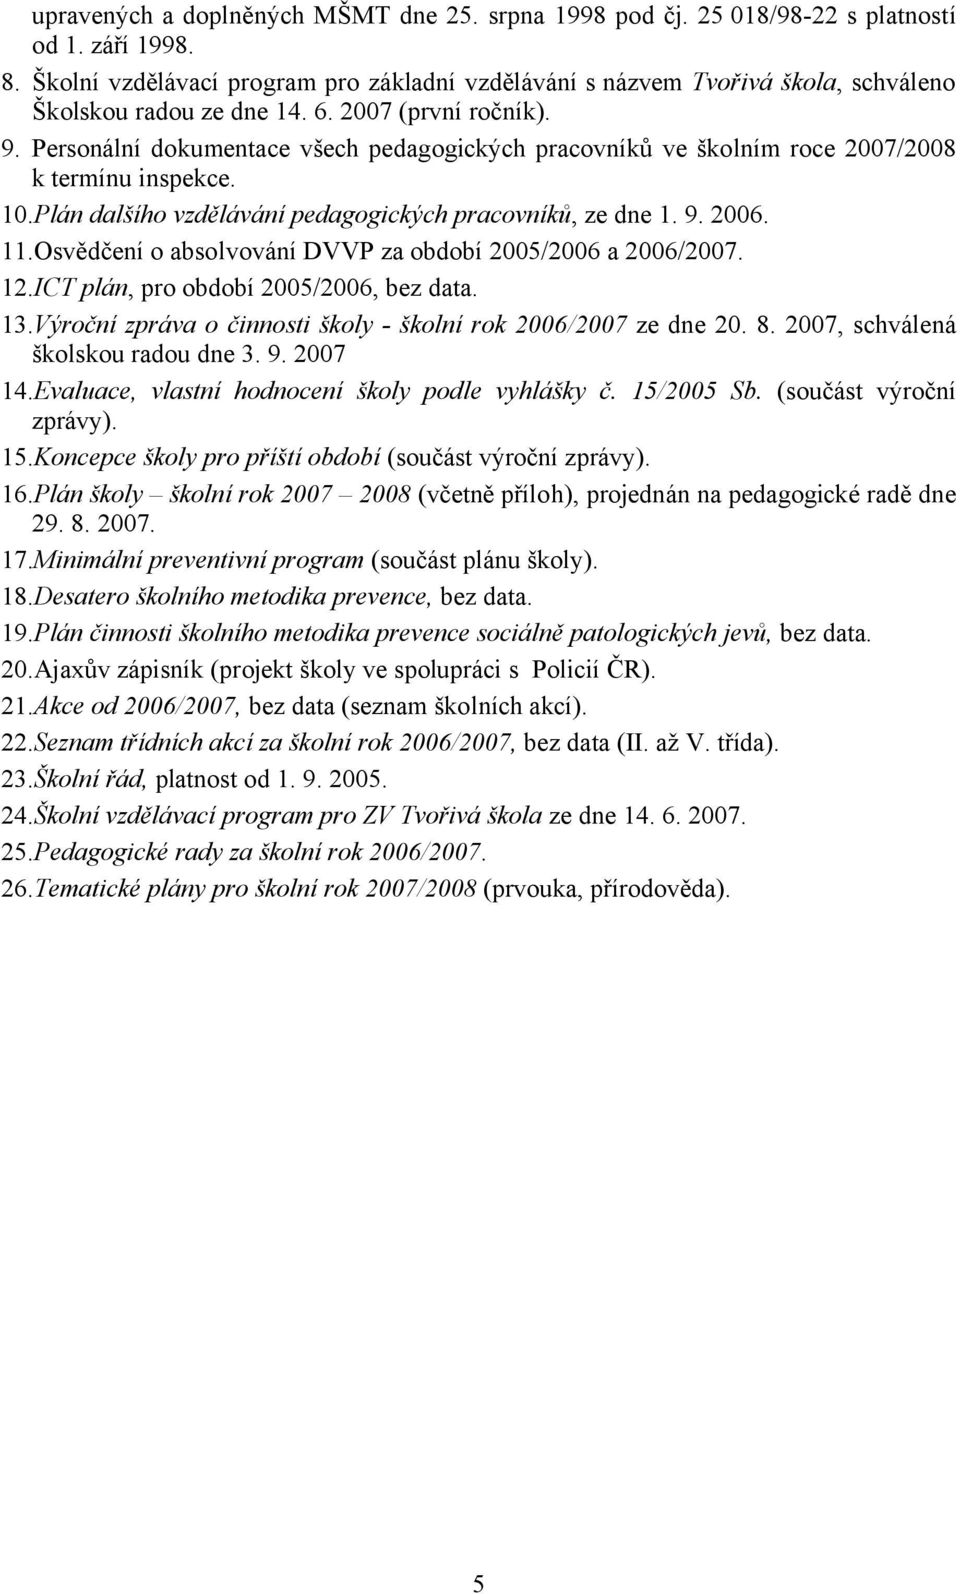 Personální dokumentace všech pedagogických pracovníků ve školním roce 2007/2008 k termínu inspekce. 10.Plán dalšího vzdělávání pedagogických pracovníků, ze dne 1. 9. 2006. 11.